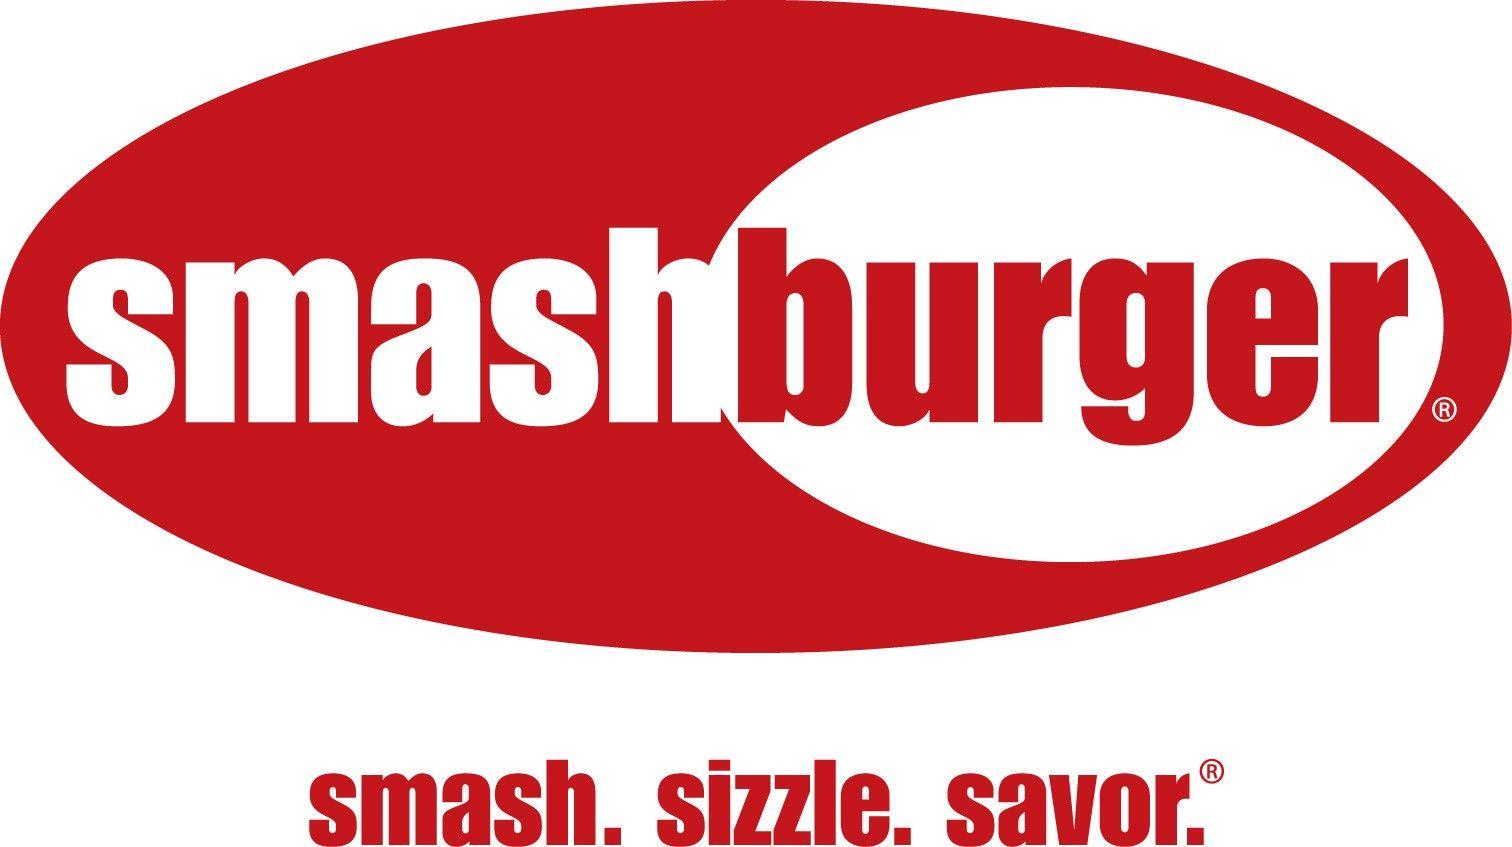 GameStop Logo - The GameStop Smashburger Conspiracy